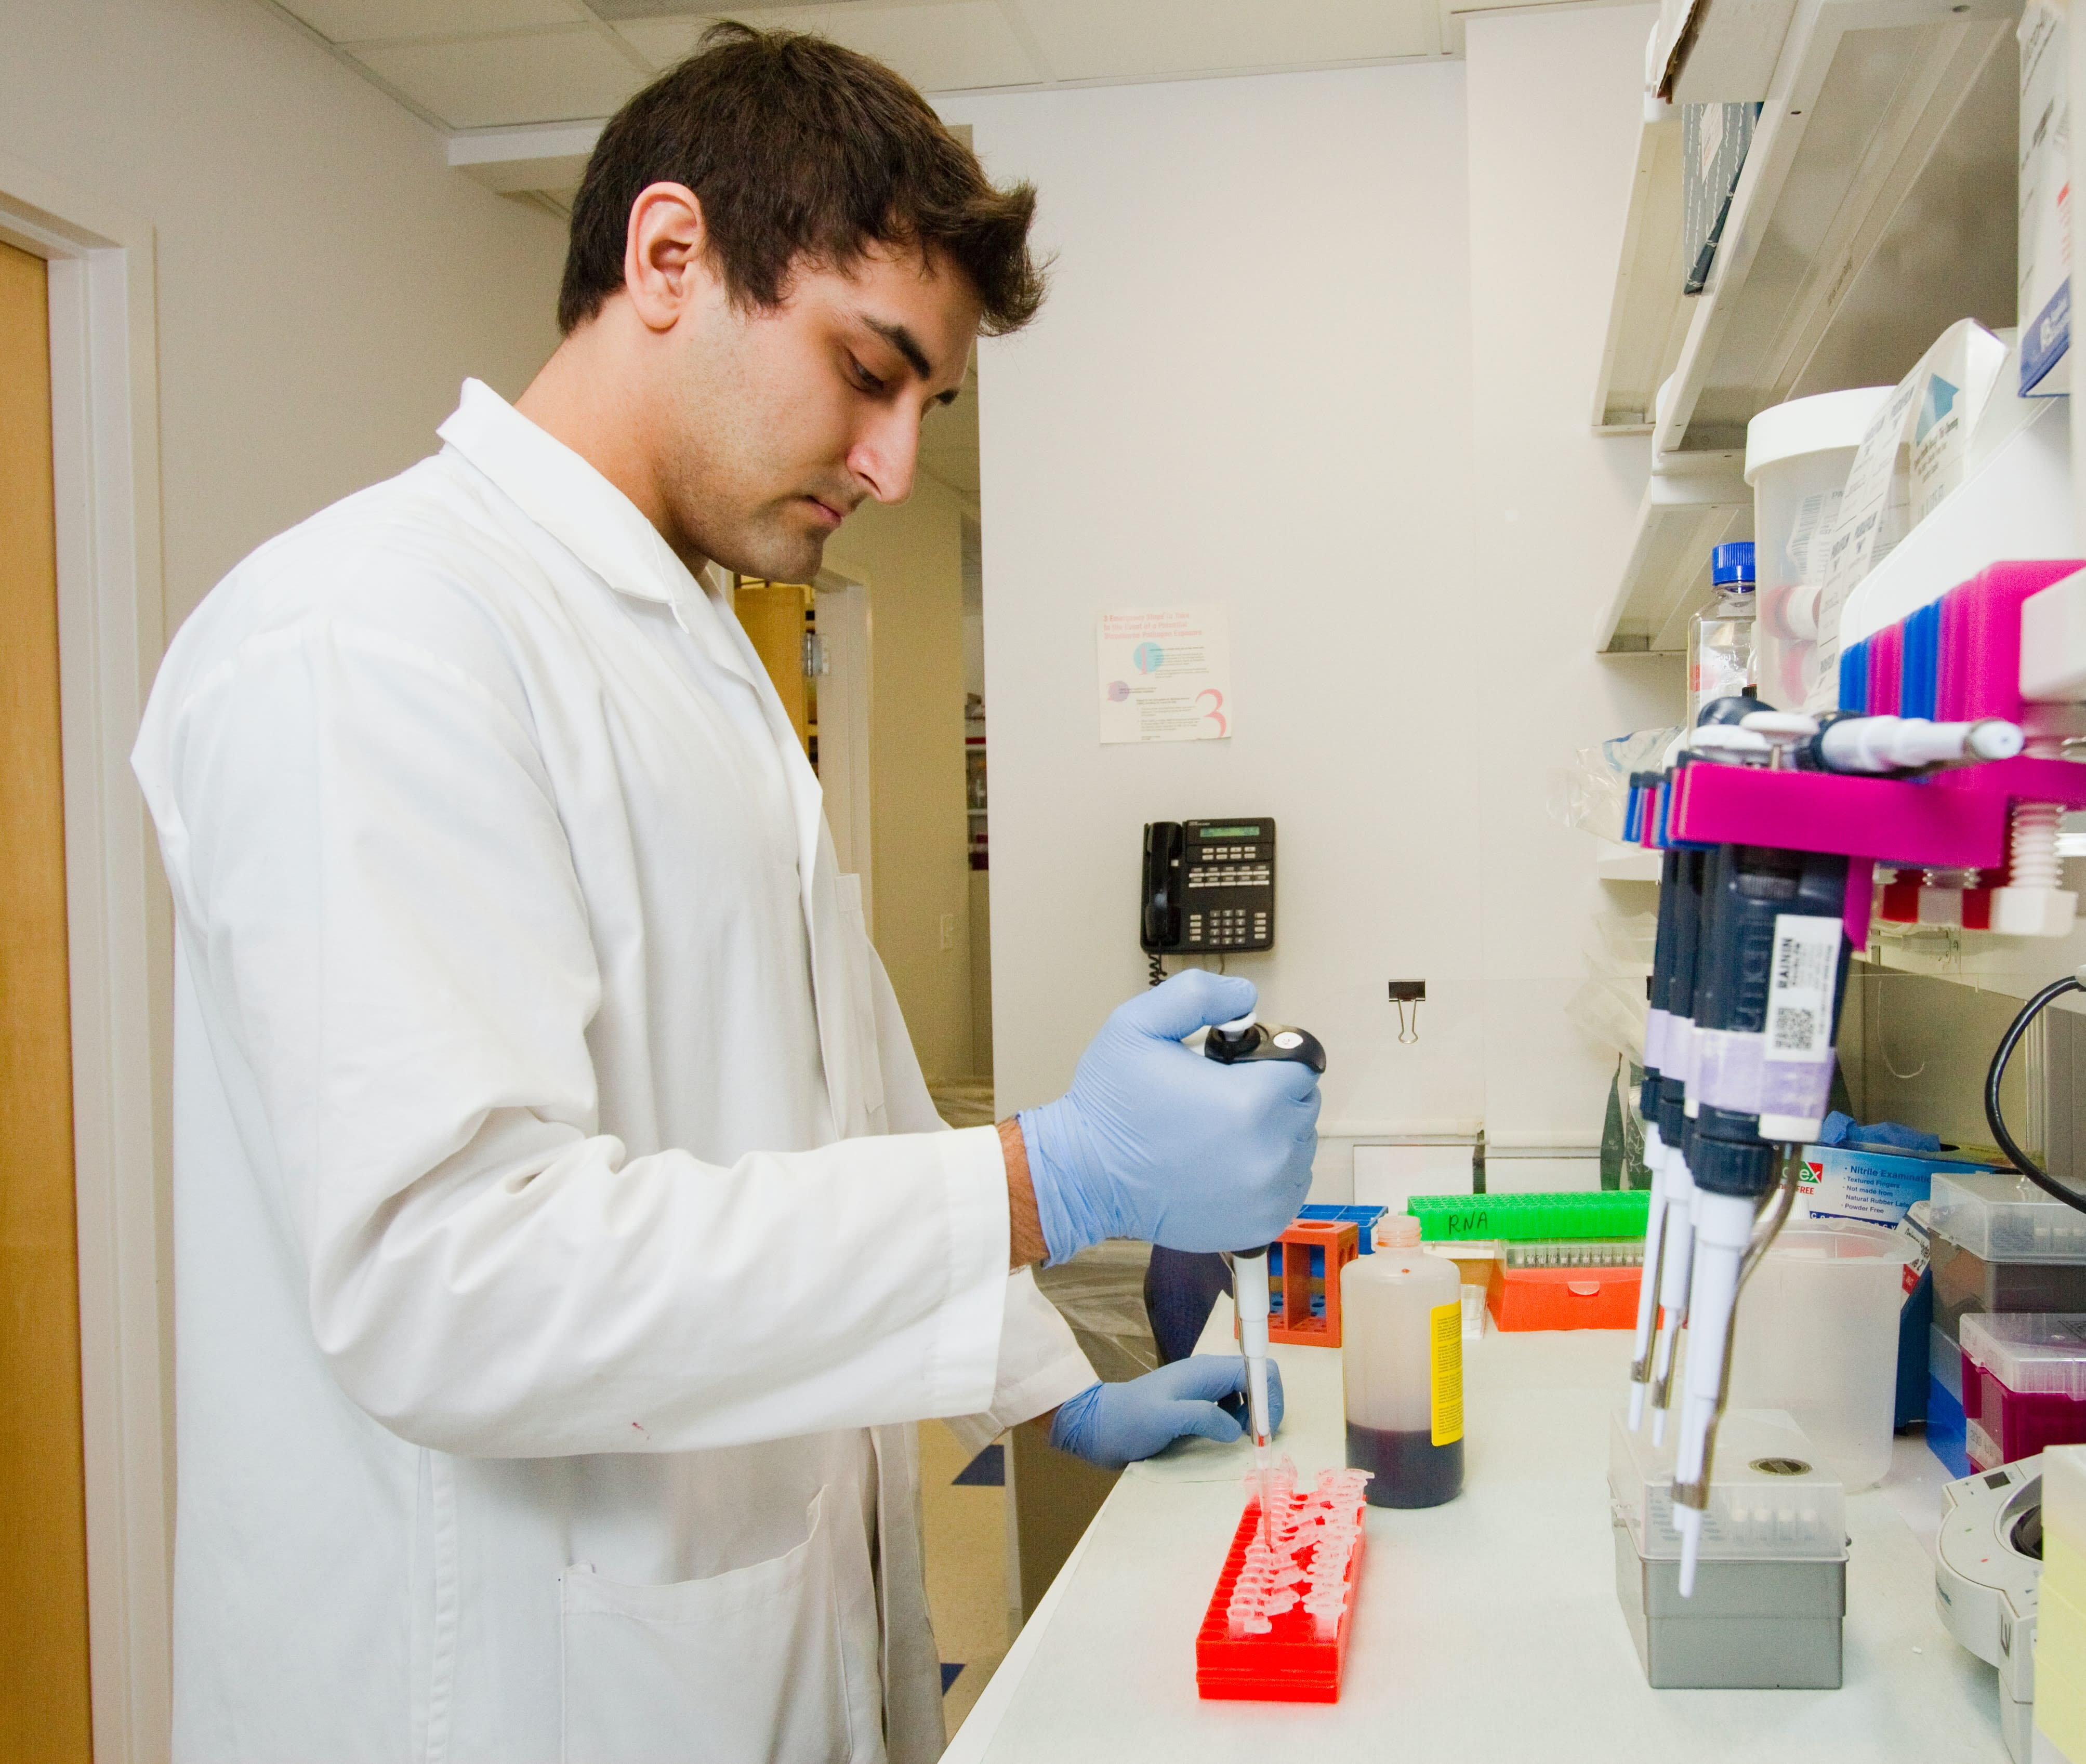 Un scientifique de sexe masculin dans un laboratoire pipetant un réactif protéique dans des tubes eppendorf.